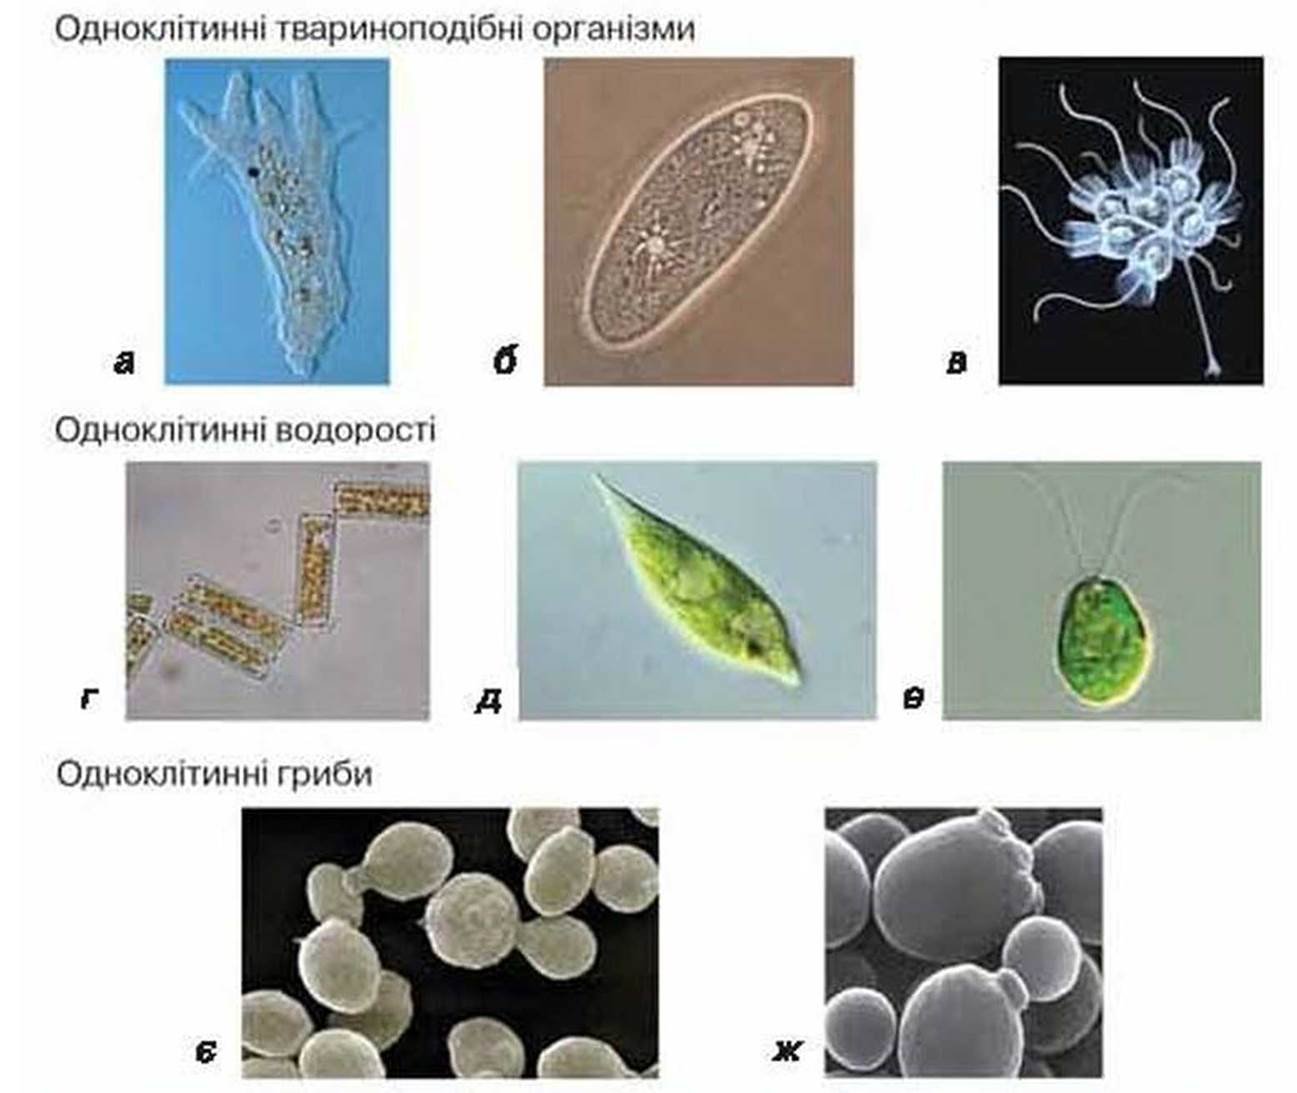 Бактерии эукариотические организмы. Биологическое разнообразие одноклеточных эукариот. Одноклеточные эукариоты примеры грибов. Одноклеточные и многоклеточные бактерии. Одноклеточные организмы.